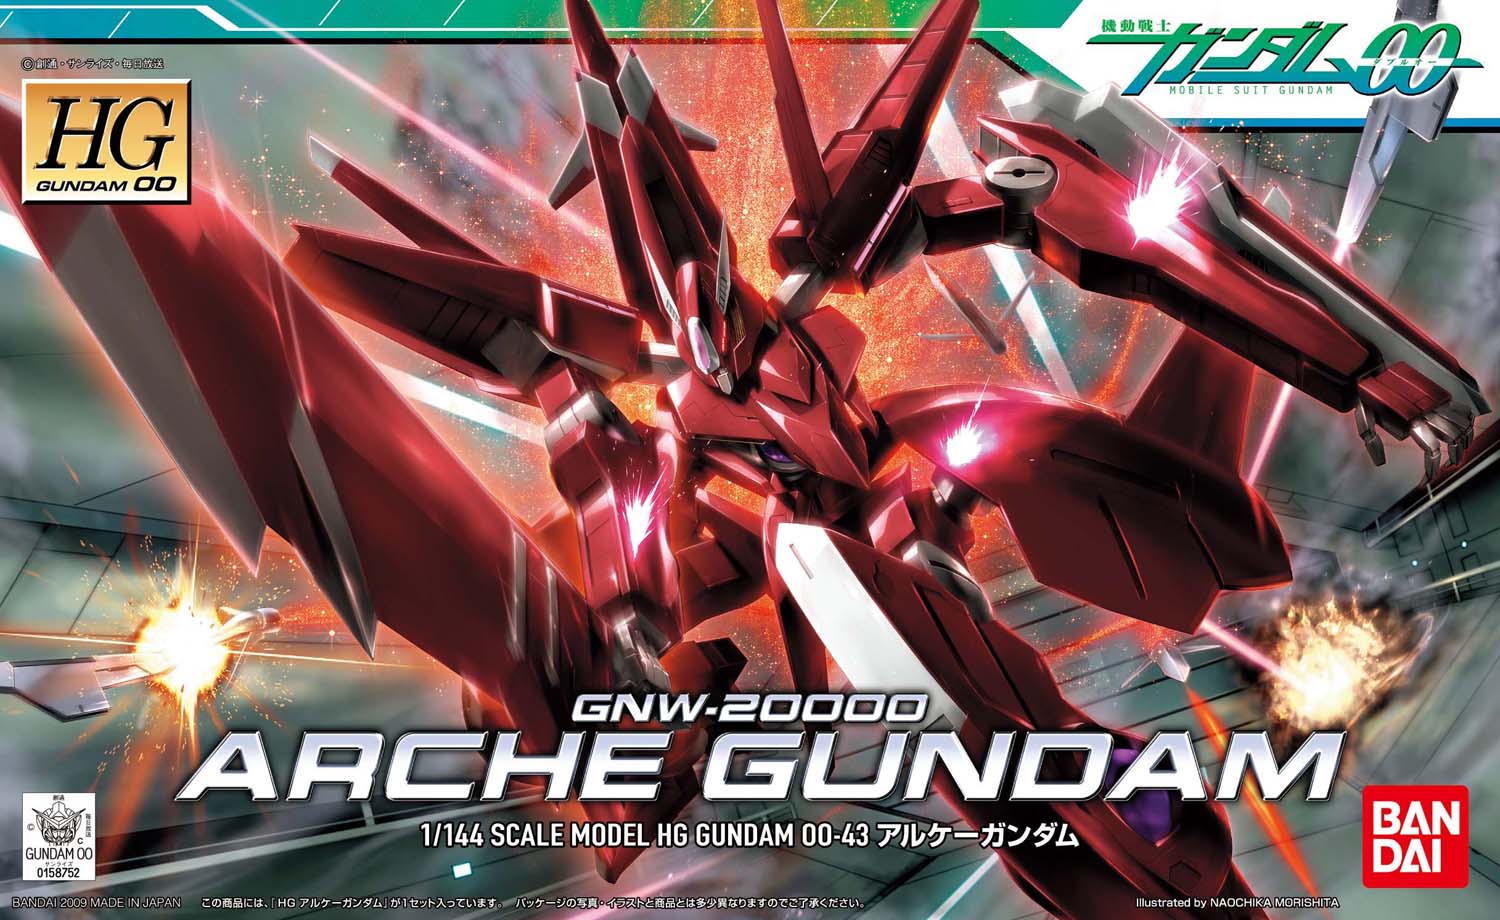 HG 1/144 GNW-20000 アルケーガンダム [Arche Gundam] 0158752 5060649 4543112587527 4573102606495